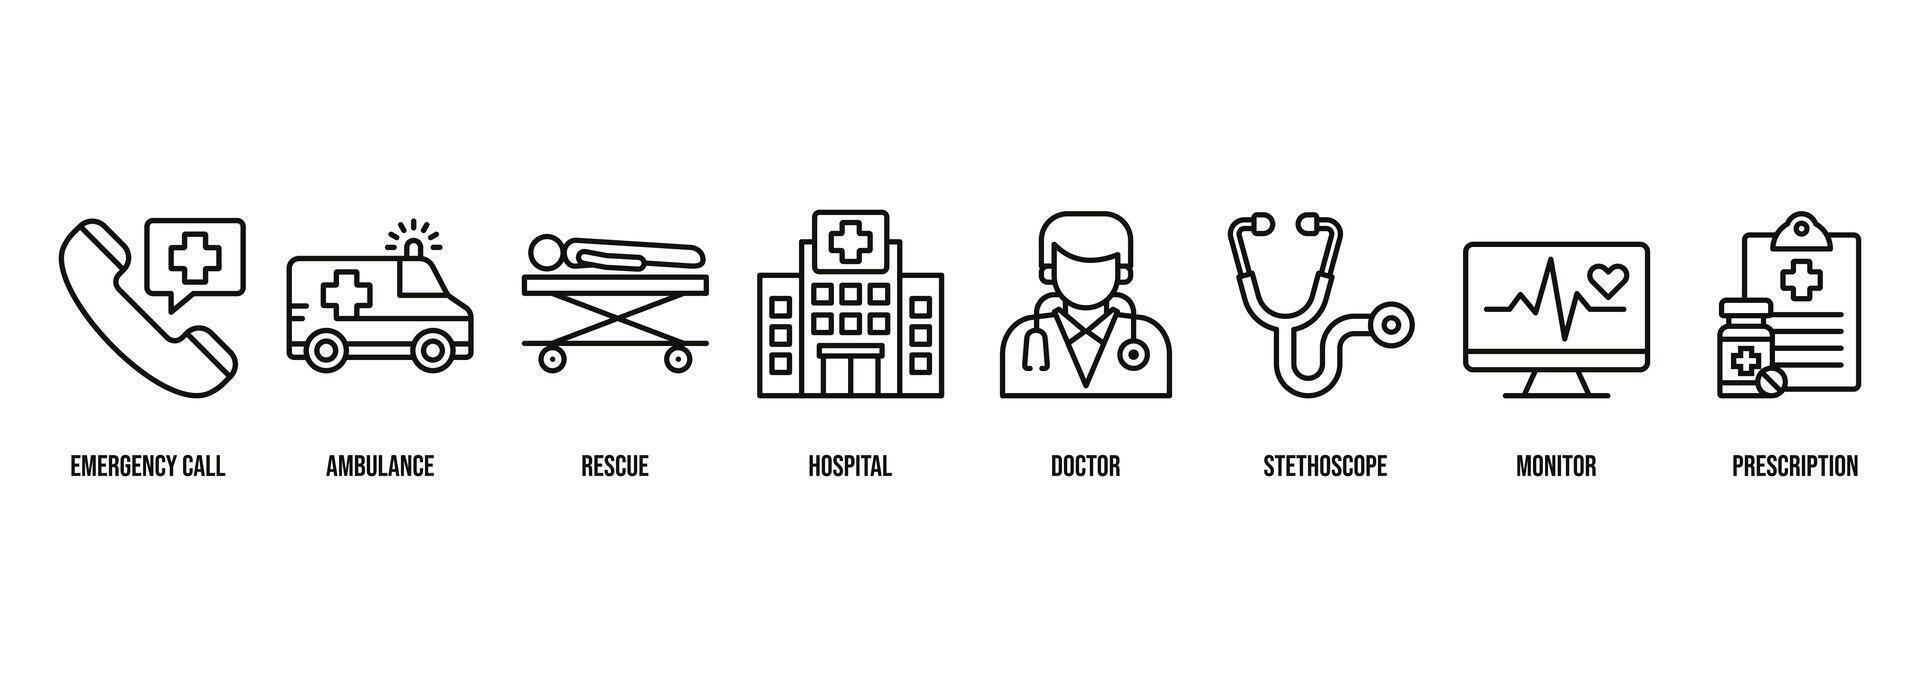 medizinisch Banner Netz Symbol Vektor Illustration zum Notfall Forderung, Krankenwagen, Rettung, Krankenhaus, Arzt, Stethoskop, Monitor und Rezept